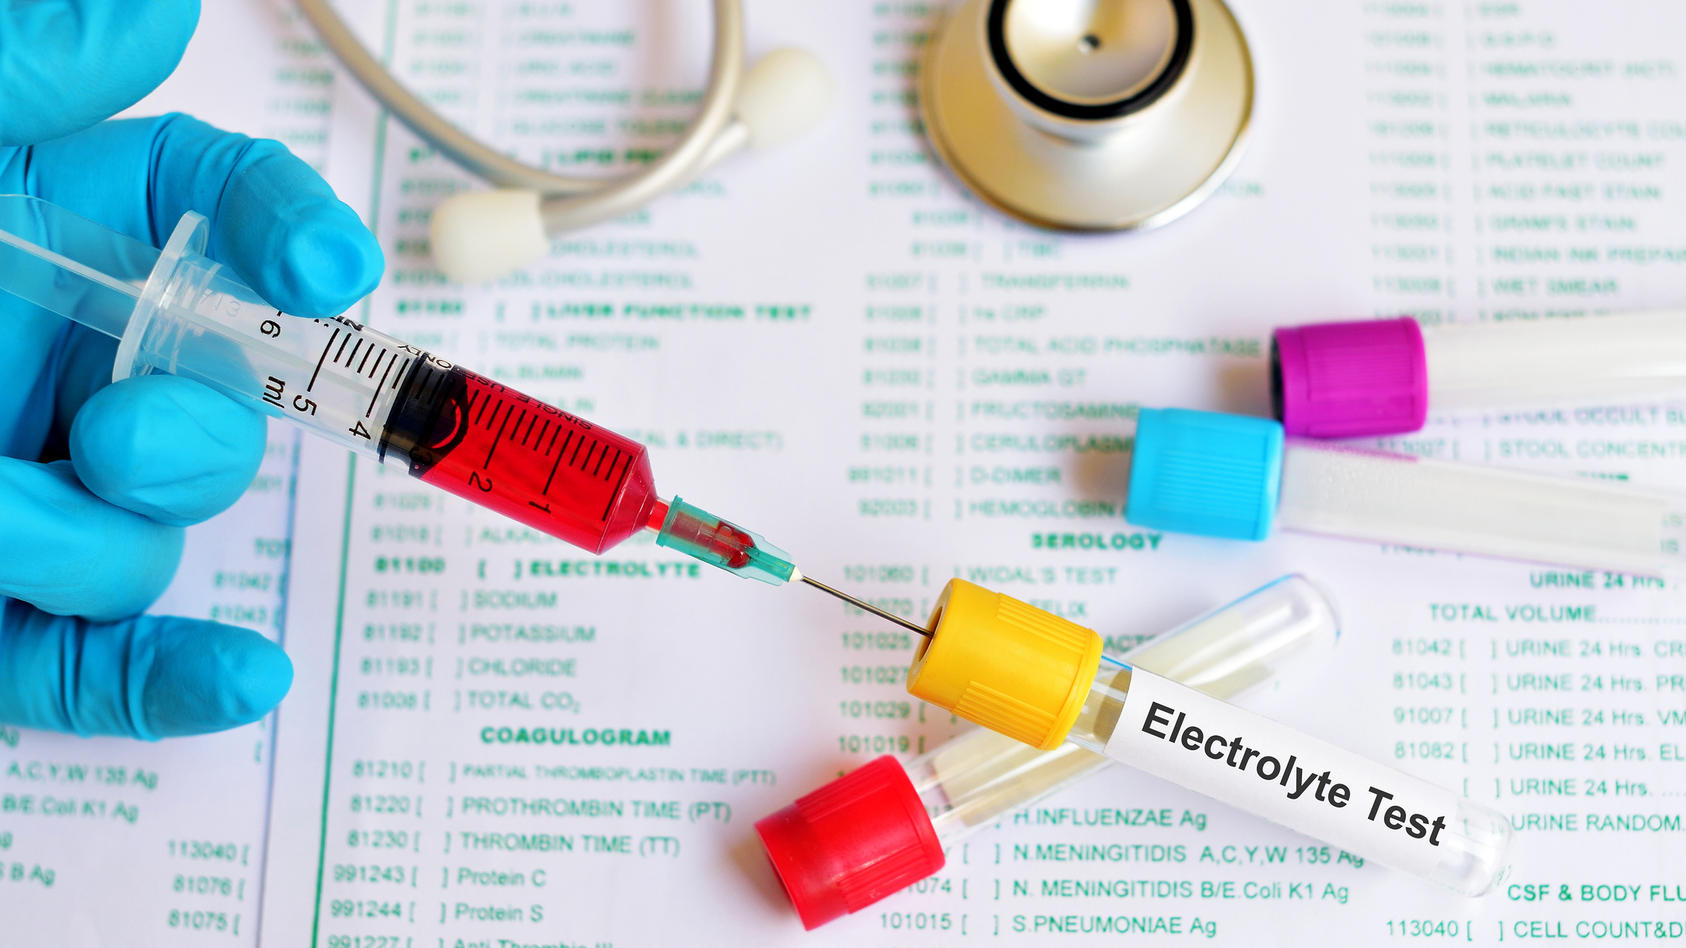 Gesundheitslexikon: Elektrolyte sind lebensnotwendig für uns